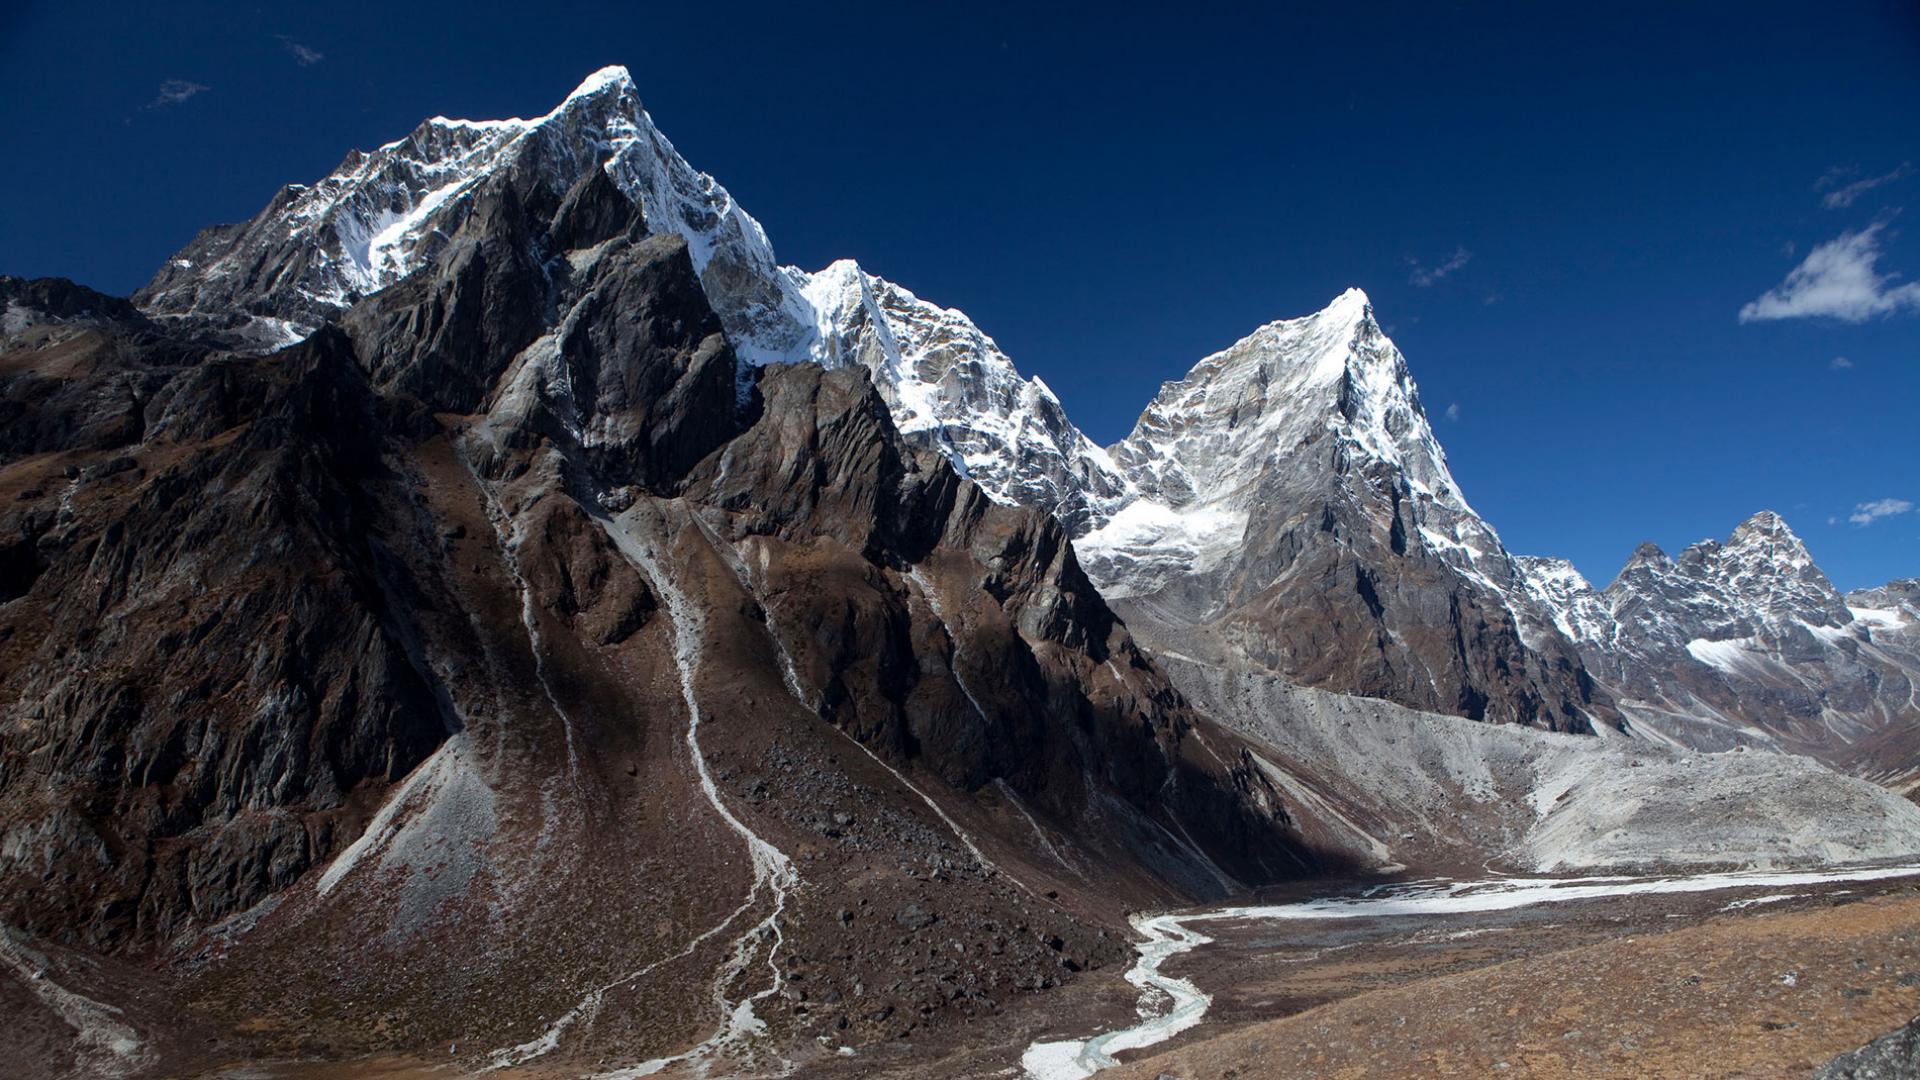  Débris d'un glissement de terrain vu de la piste entre Dengboche et Tuckla Pass au-dessus de Pheriche dans la région de l'Everest de l'Himalaya au Népal